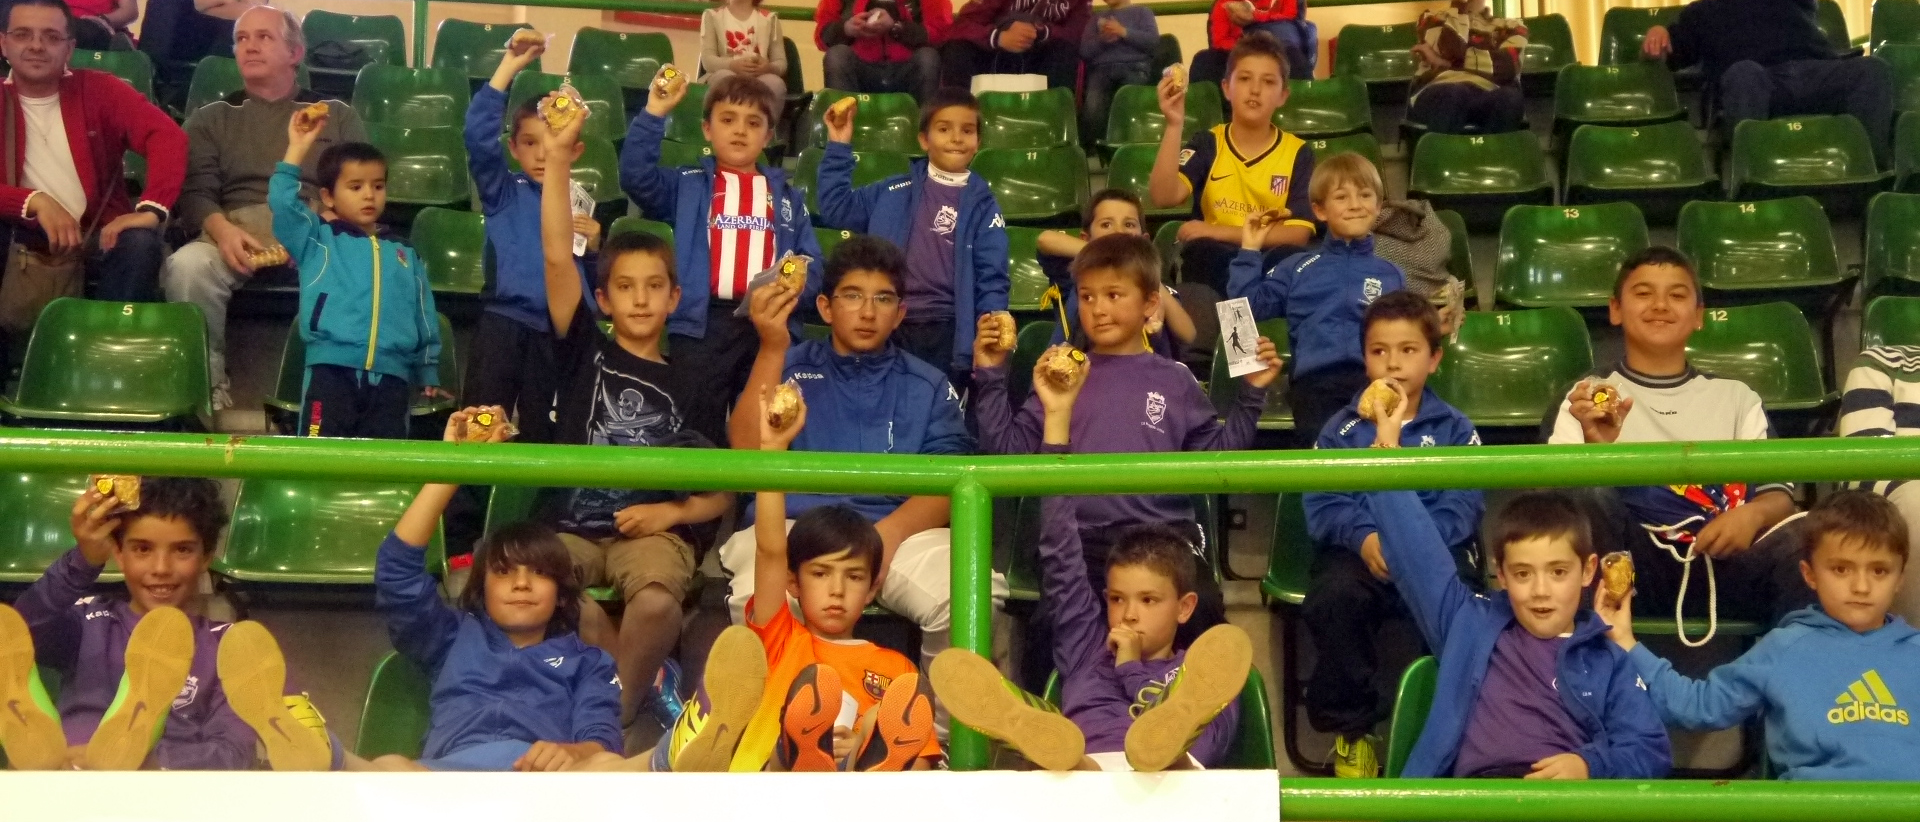 Segovia Futsal contará ante UMA Antequera con cerca de 700 niños en la grada